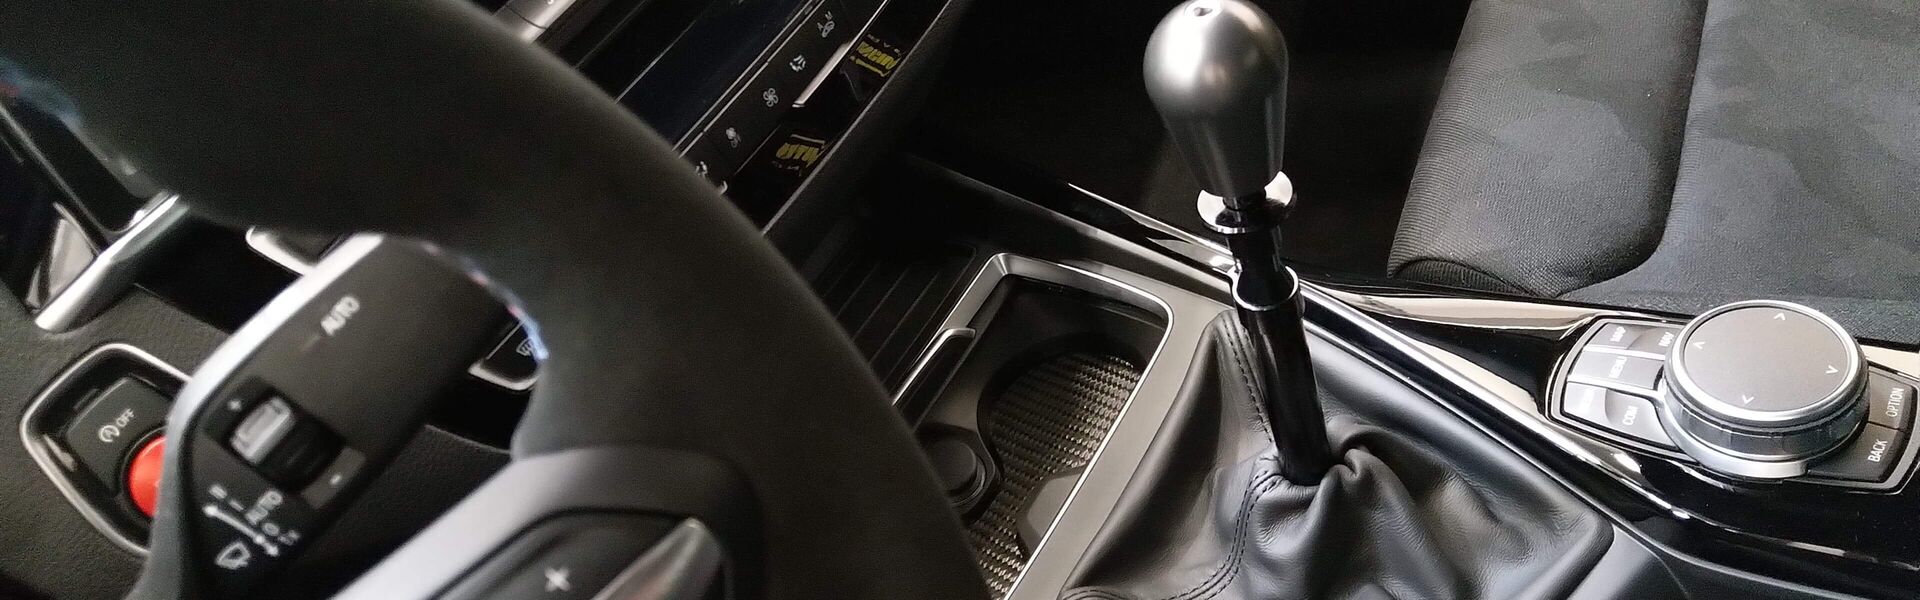 Převodovka/Řazení  pro automobil Mercedes AMG C43